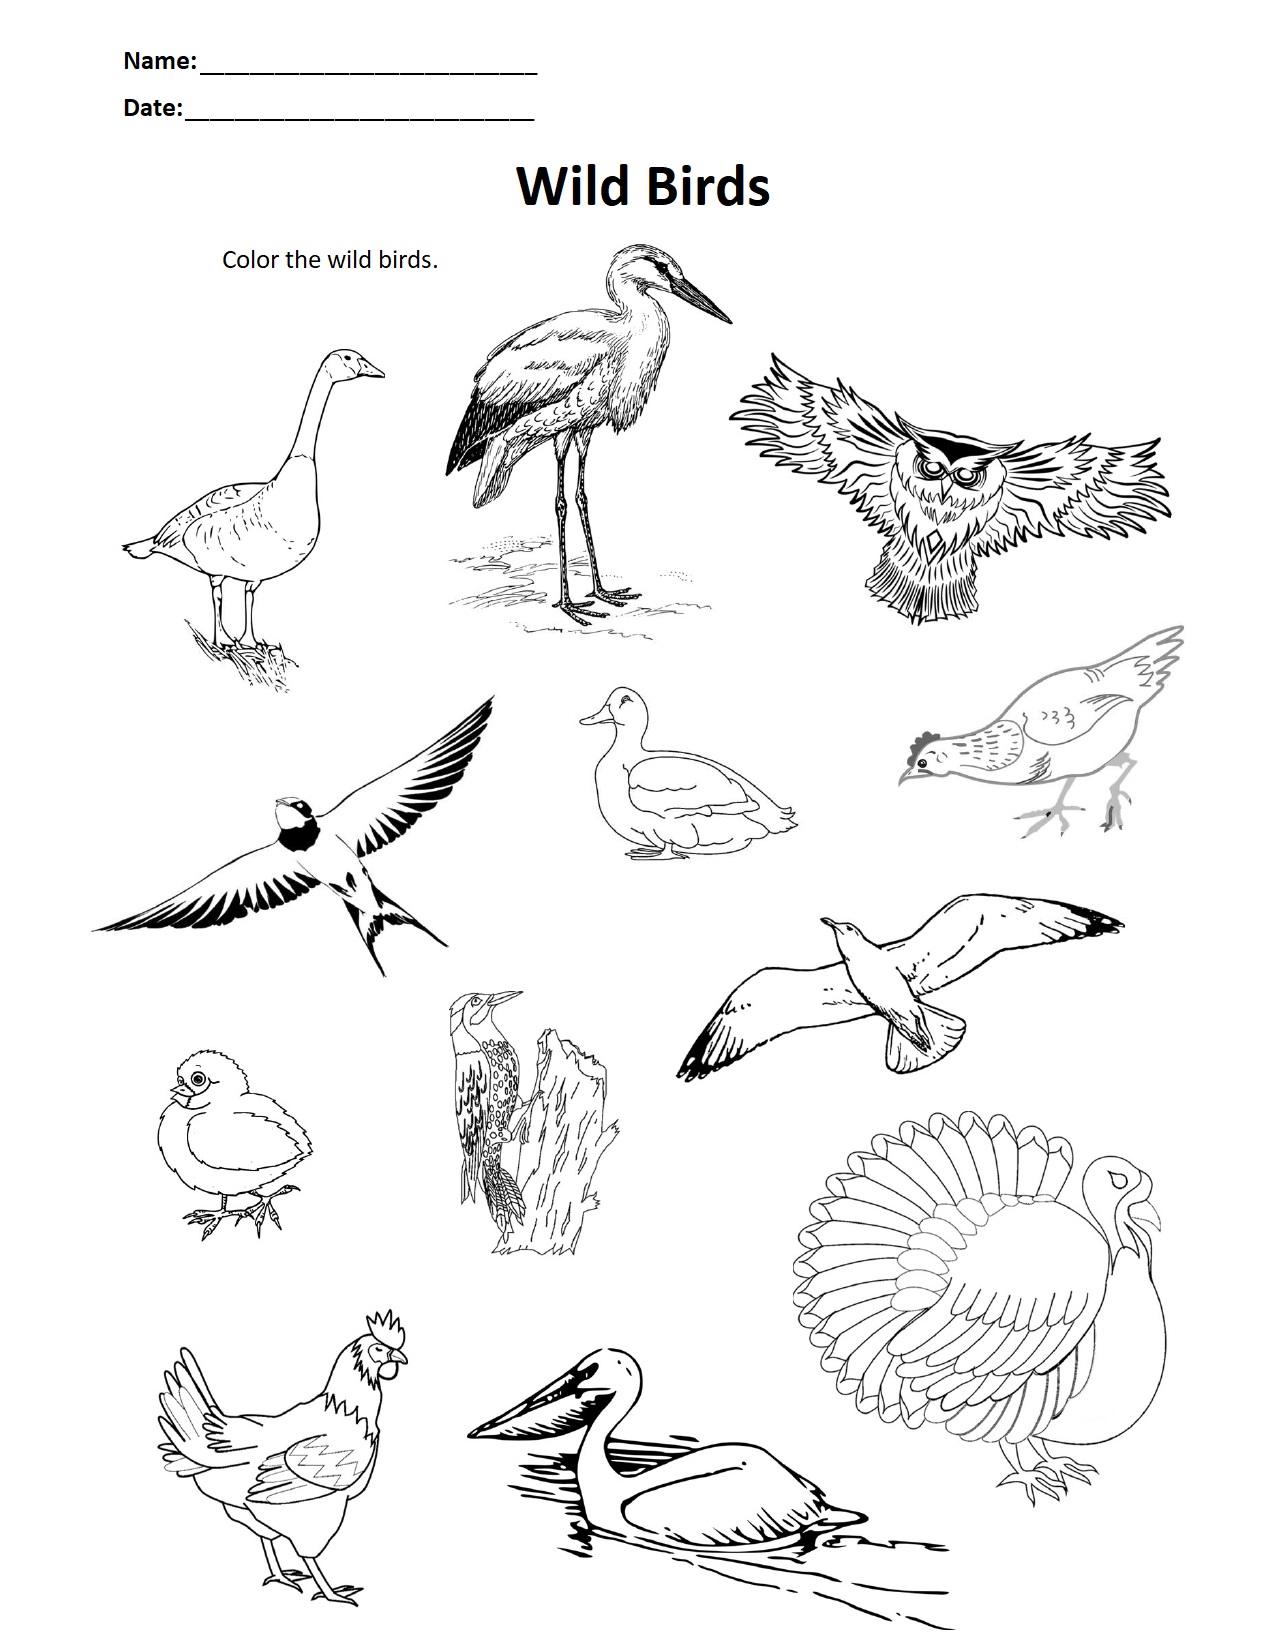 Wild Birds.jpg